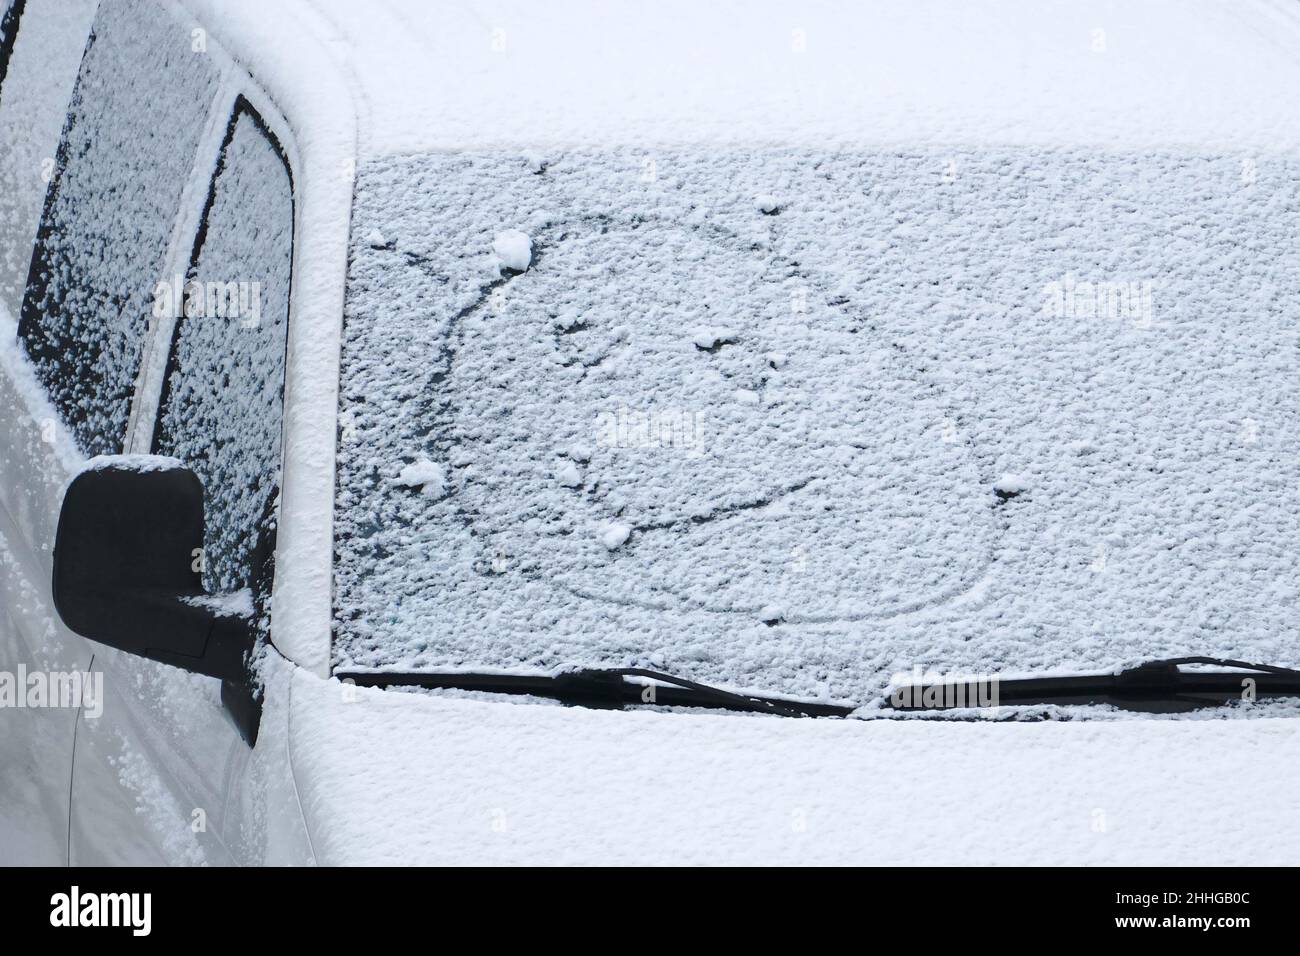 Un visage souriant dessiné en hiver sur le pare-brise de voiture de couleur blanche recouvert de neige.Une scène graphique de la saison d'hiver créative.L'expression positive comme drôle Banque D'Images